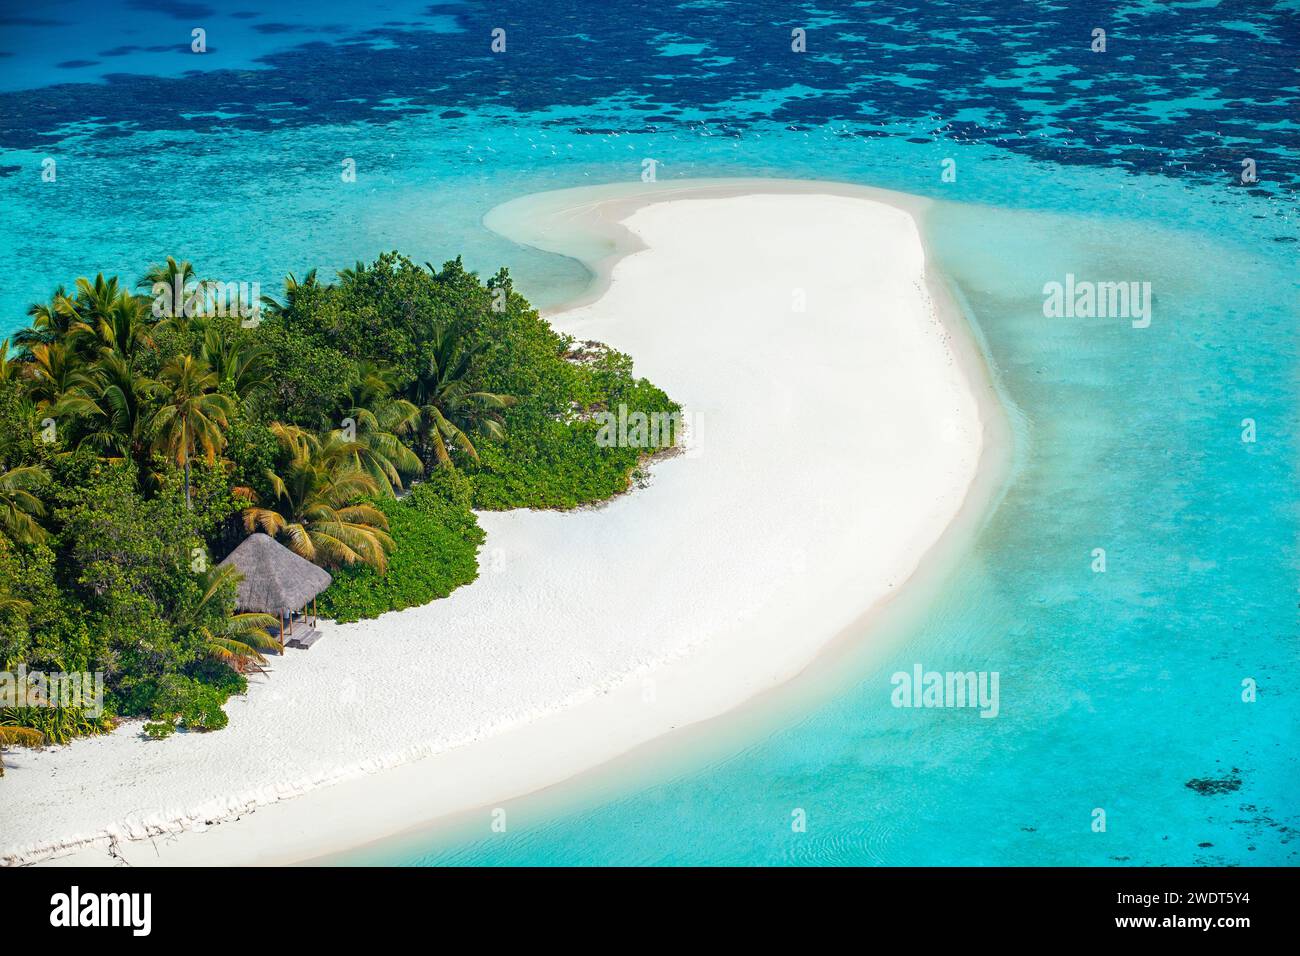 Vista aerea dell'isola tropicale con la laguna, le Maldive, l'Oceano Indiano e l'Asia Foto Stock